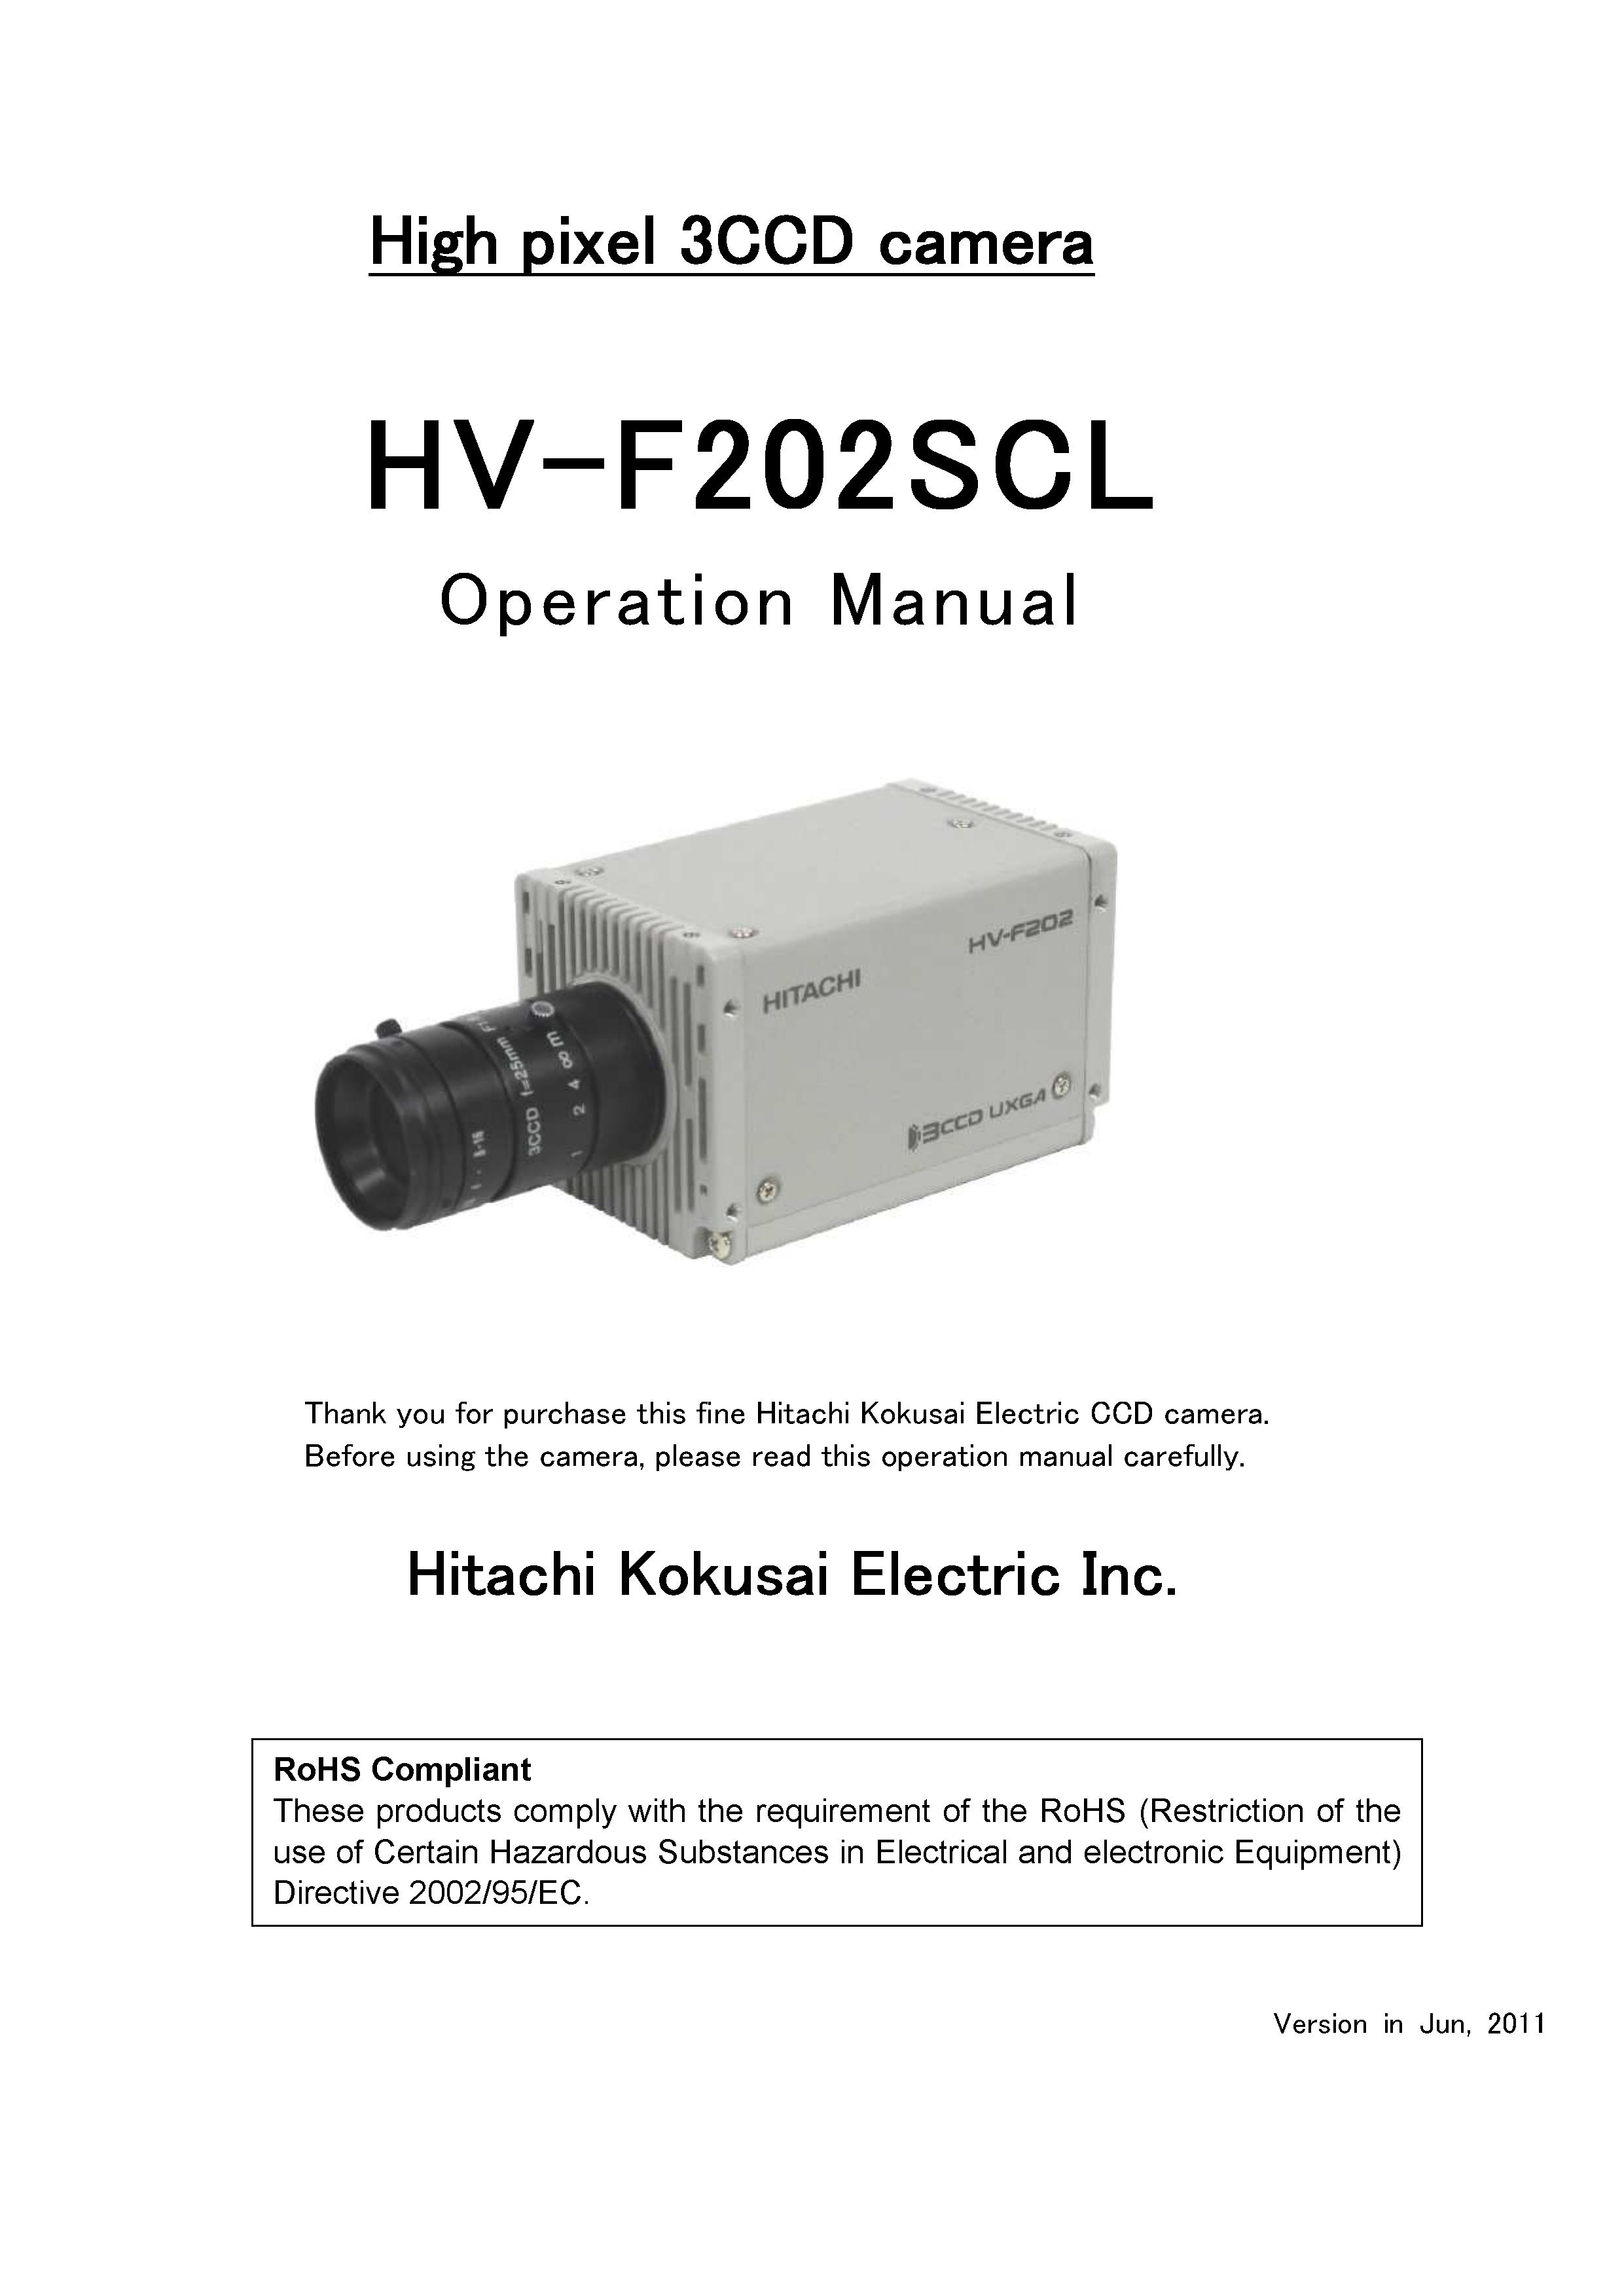 Hitachi Koki USA high pixel 3ccd camera Security Camera User Manual